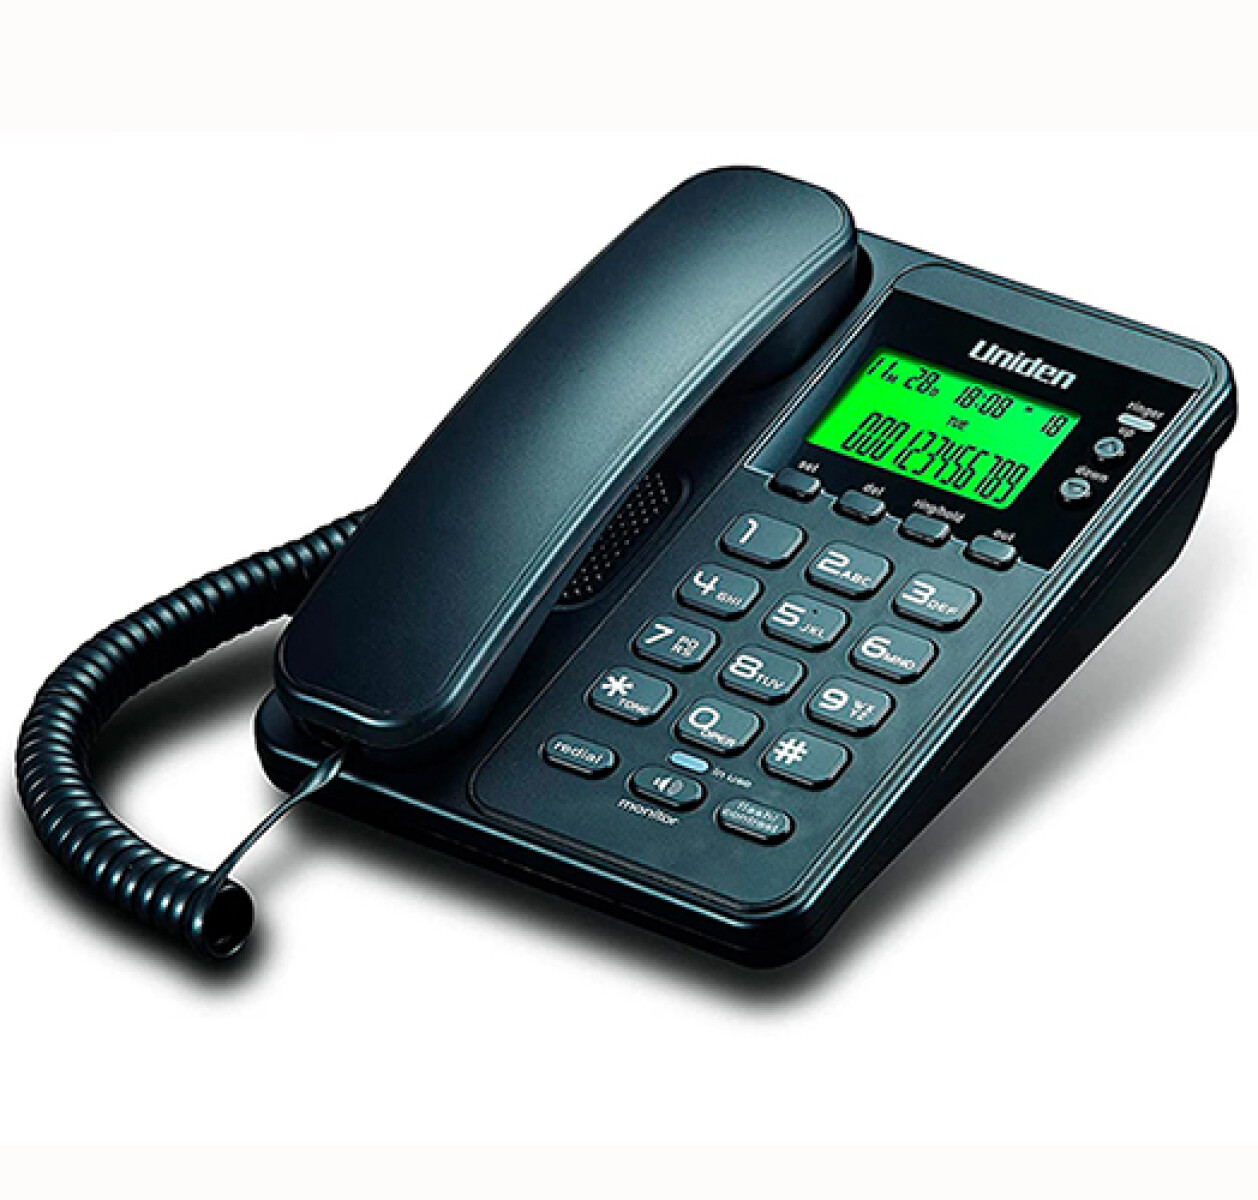 TELEFONO LINEA UNIDEN AS-6404 MESA/PARED c/Identificador - Sin color 